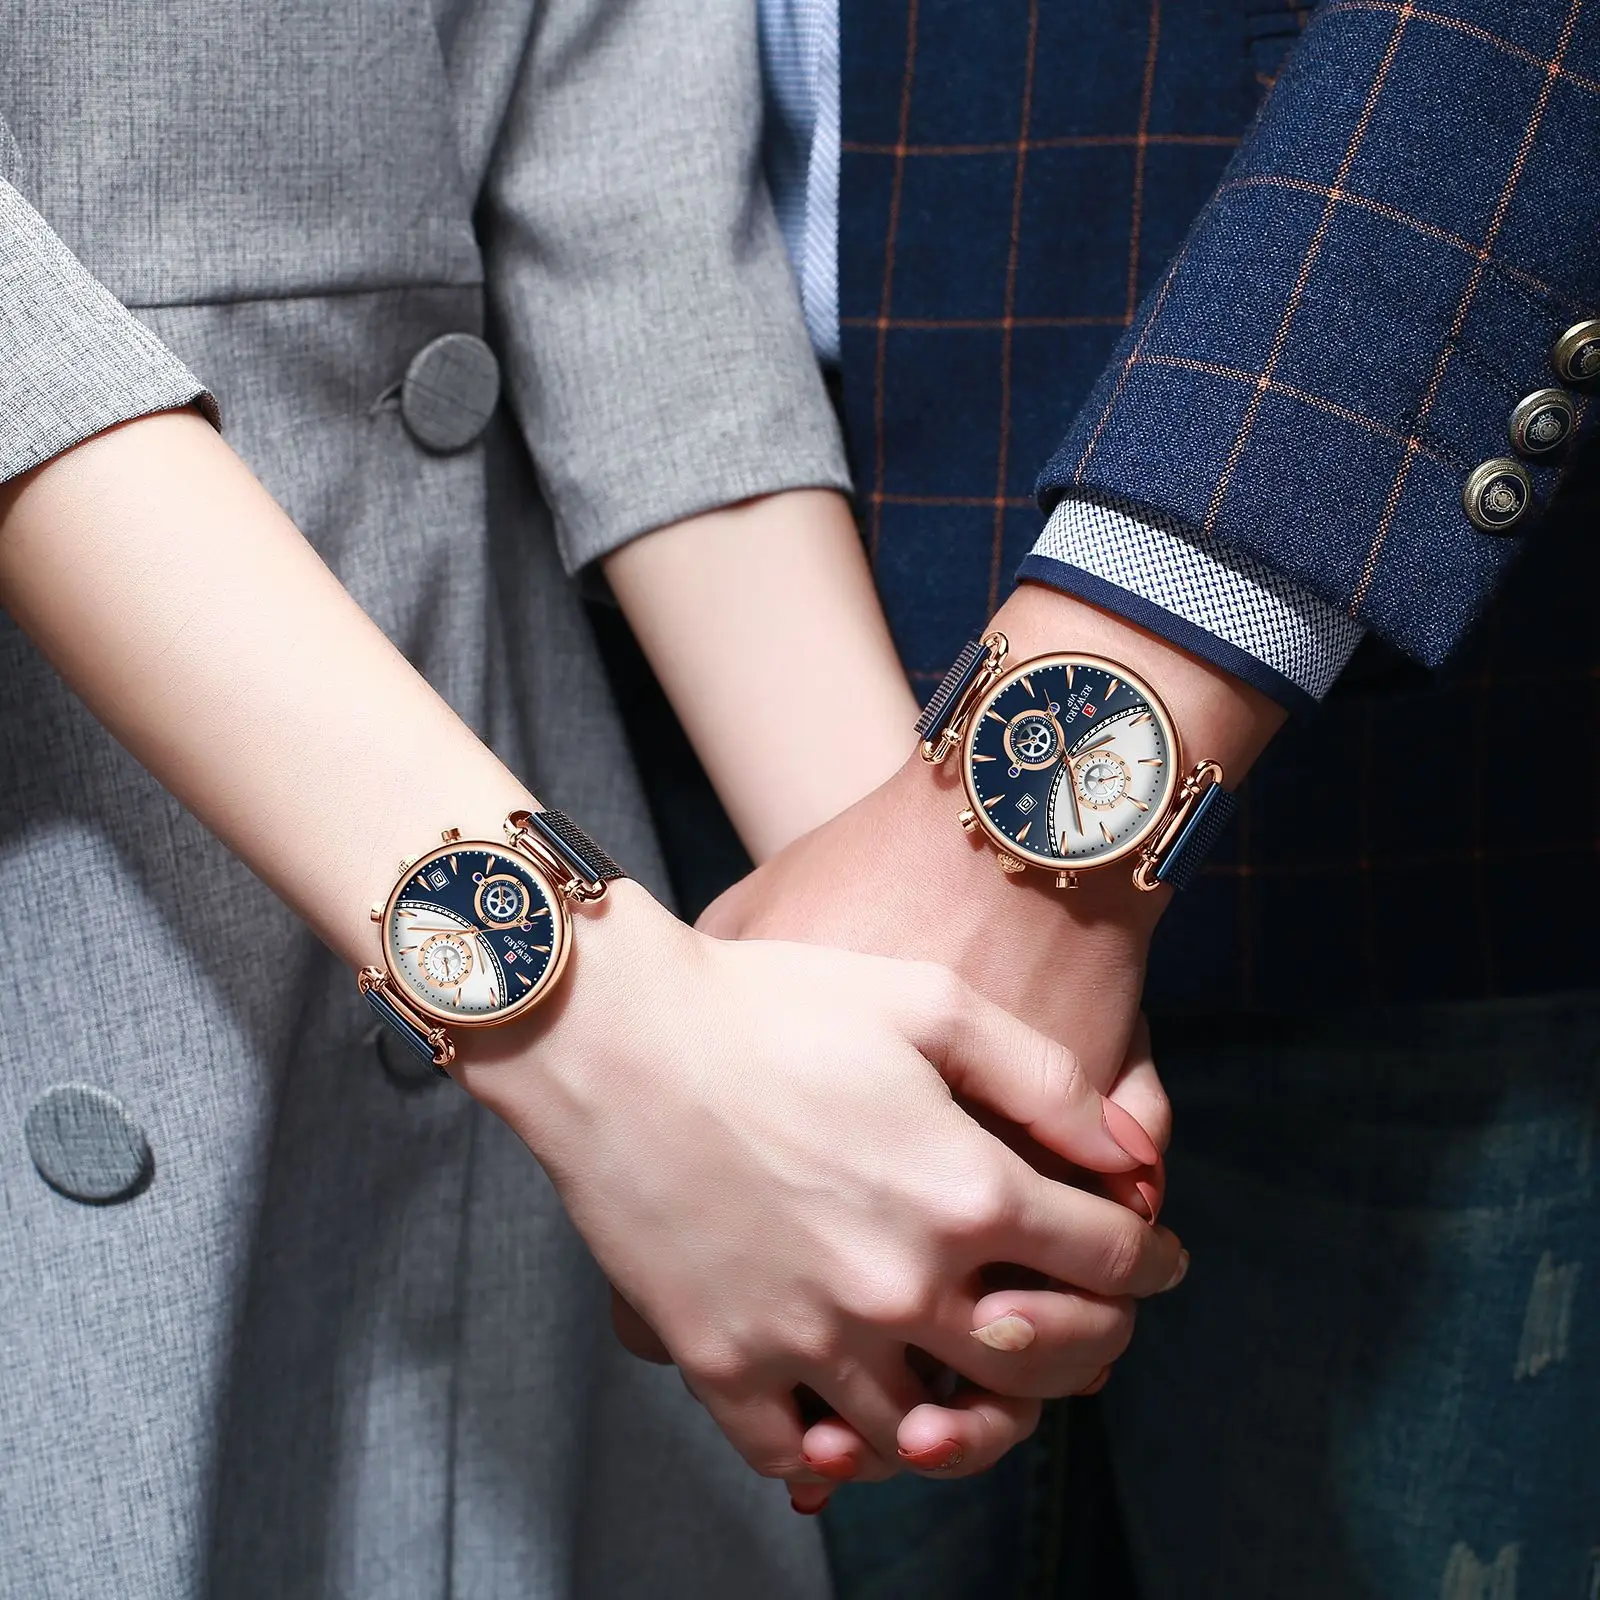 

Награда 2020 новая пара часы тенденции моды ins Пара часы Молодежные водонепроницаемые кварцевые женские часы из нержавеющей стали, часы для ж...